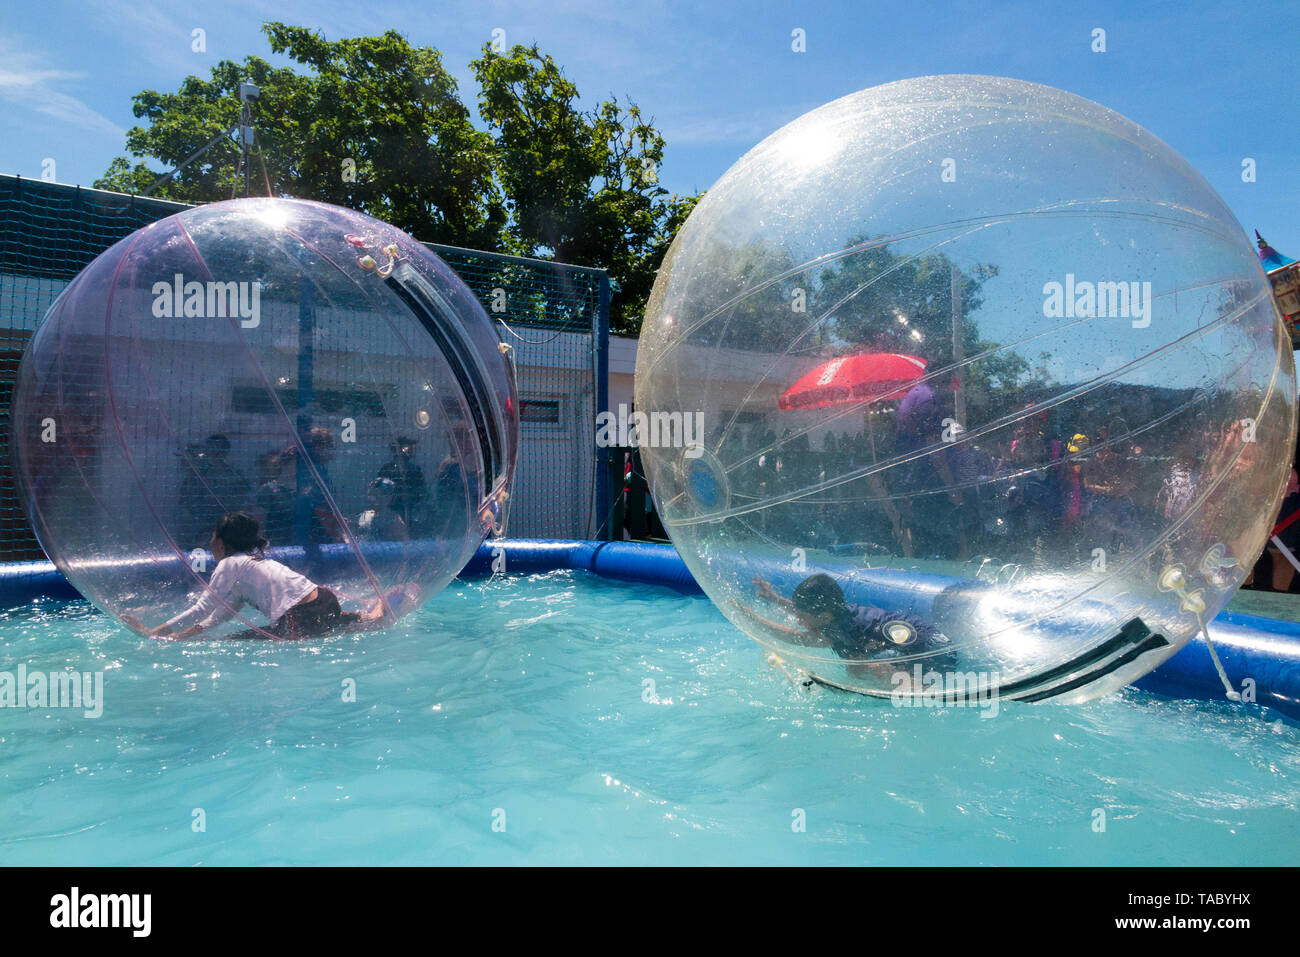 Kinder/Kinder genießen Rollen auf der Oberfläche von einem Pool von Wasser in aufblasbare Bälle waterwalkerz genannt, die es den Menschen ermöglichen, auf dem Wasser in einem menschlichen hamster Ball zu gehen. (99) Stockfoto